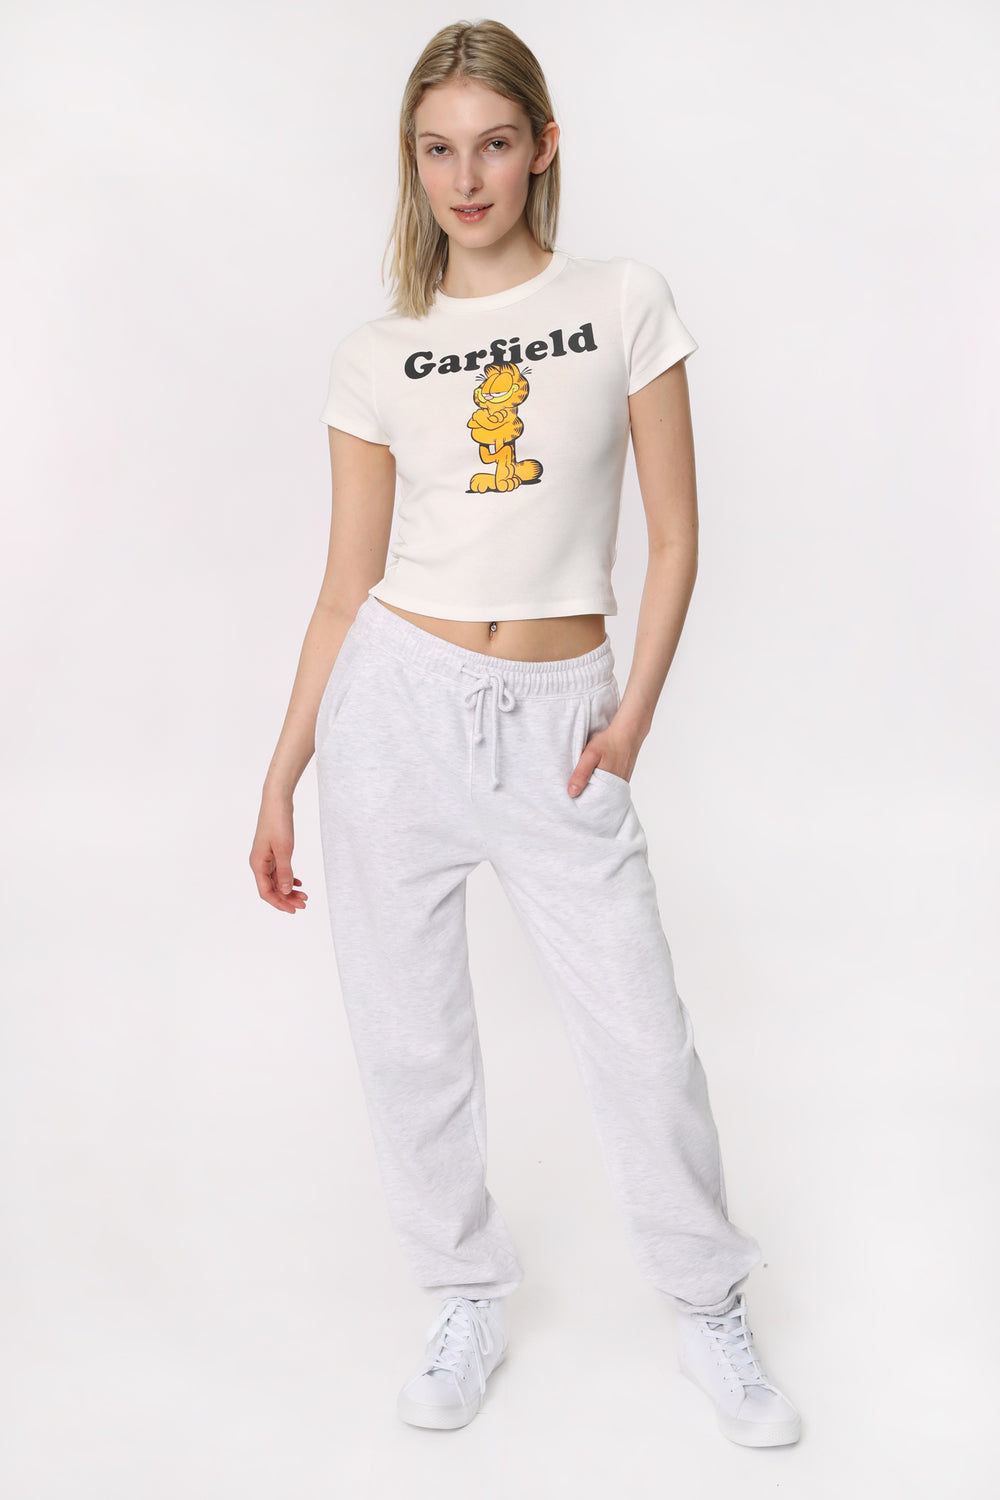 T-Shirt Court Imprimé Garfield Femme T-Shirt Court Imprimé Garfield Femme